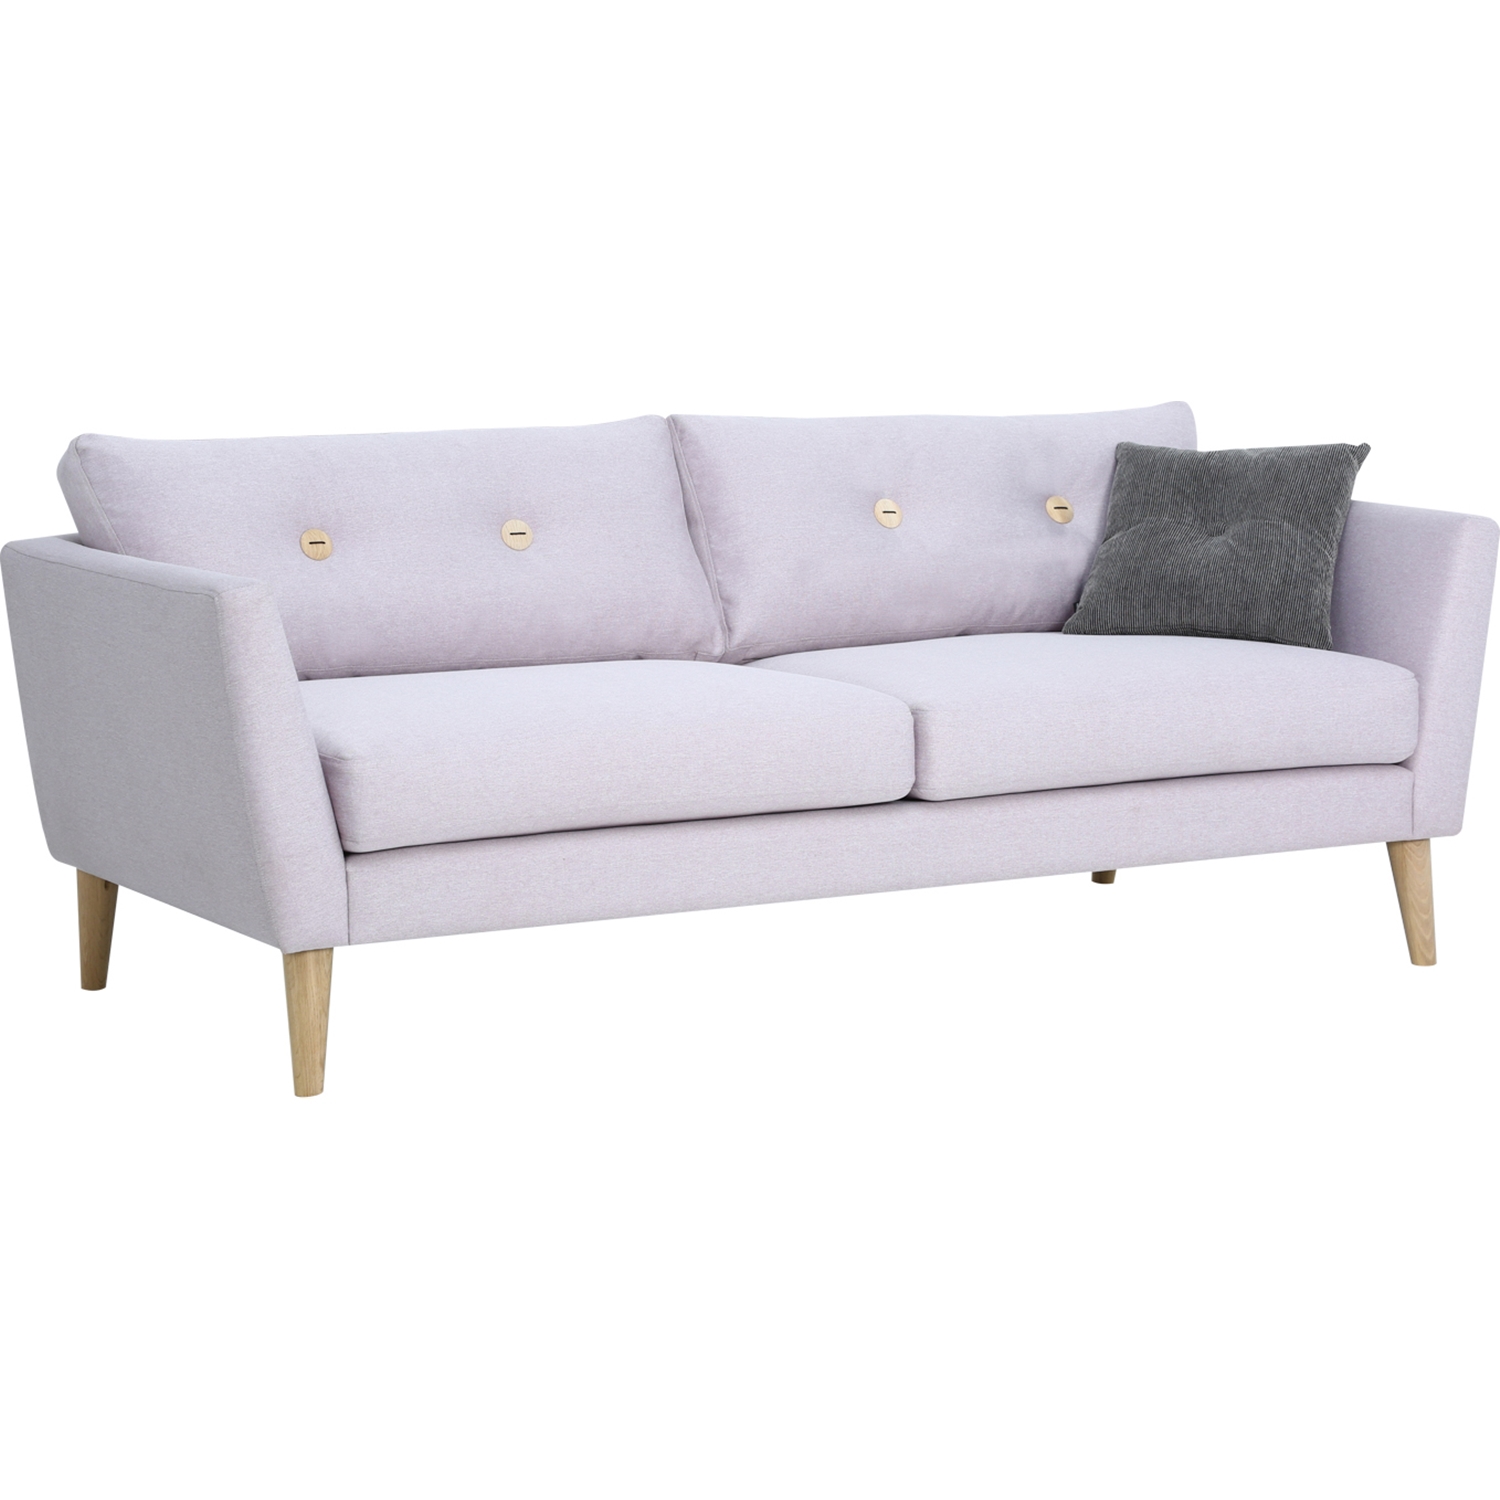 sofa1